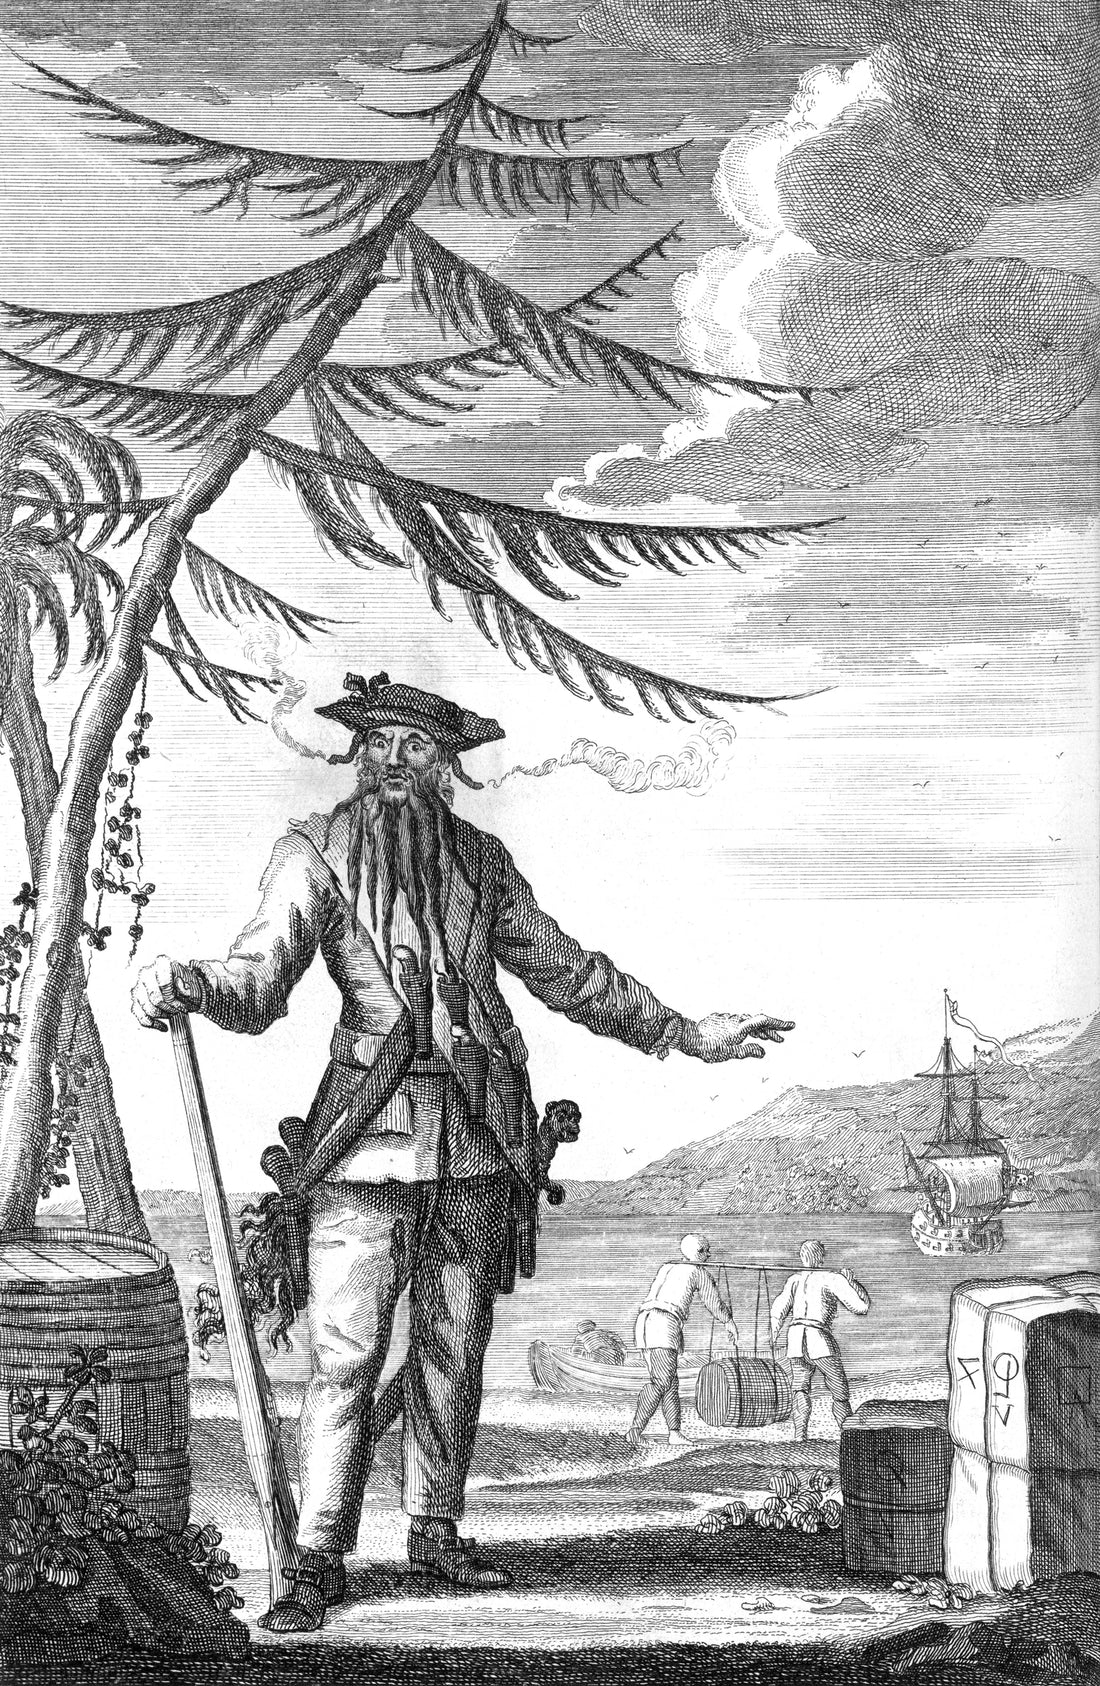 Der Legende nach: Blackbeard - Ein rebellischer Pirat mit einem furchterregenden Ruf